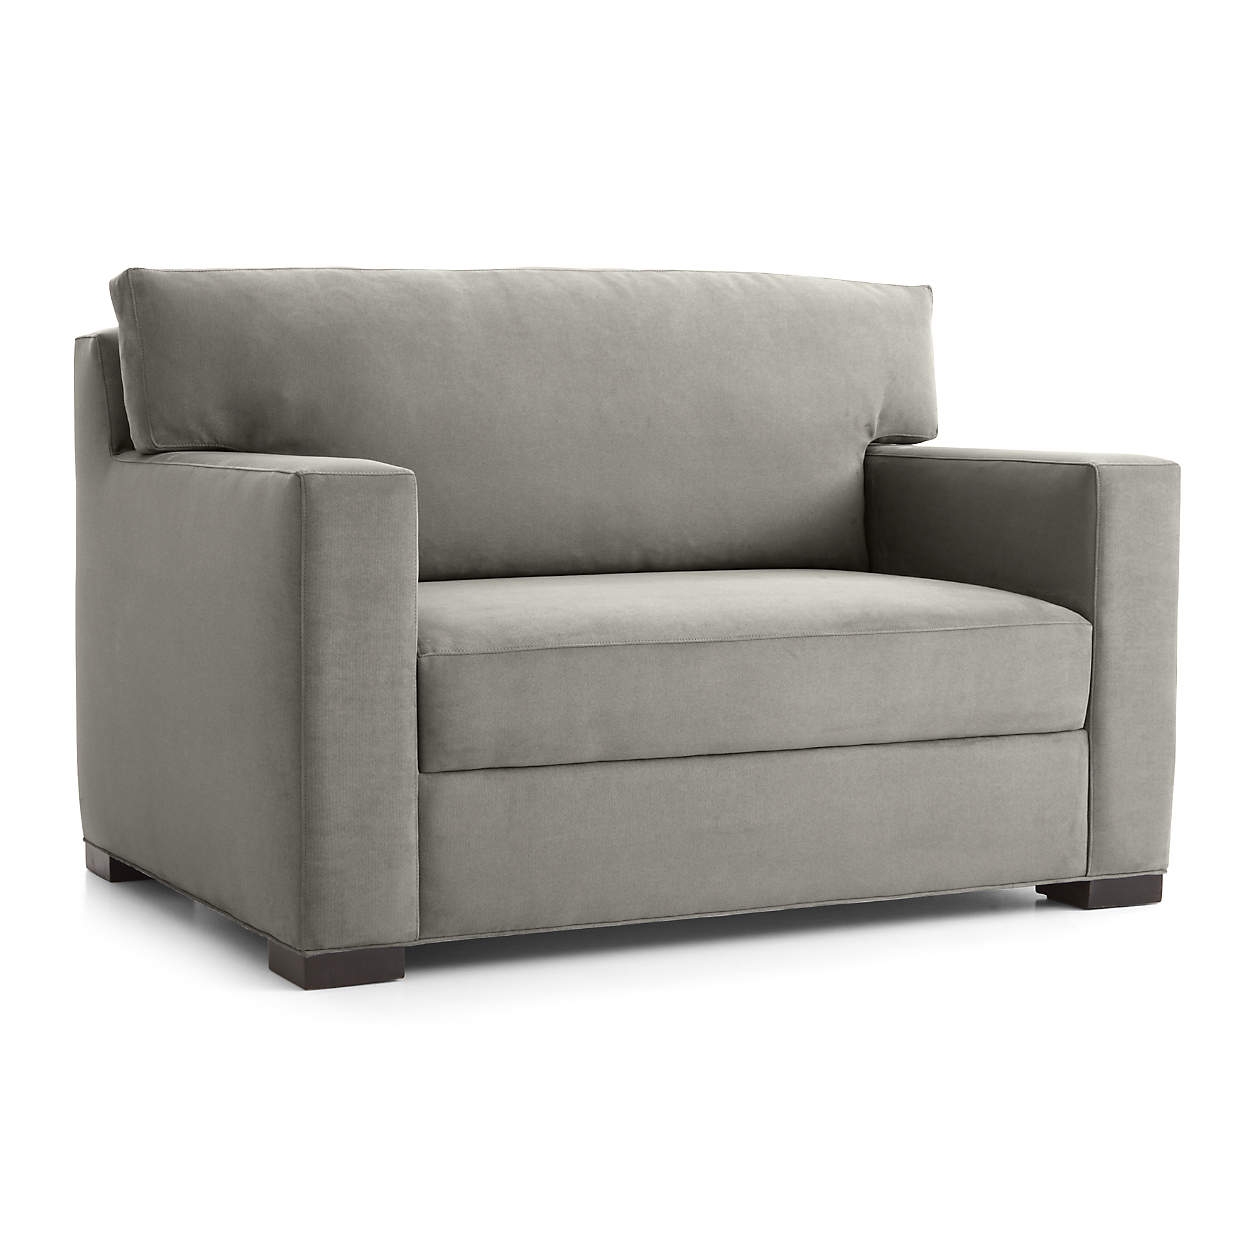 Axis Twin Sleeper Sofa - Image 3